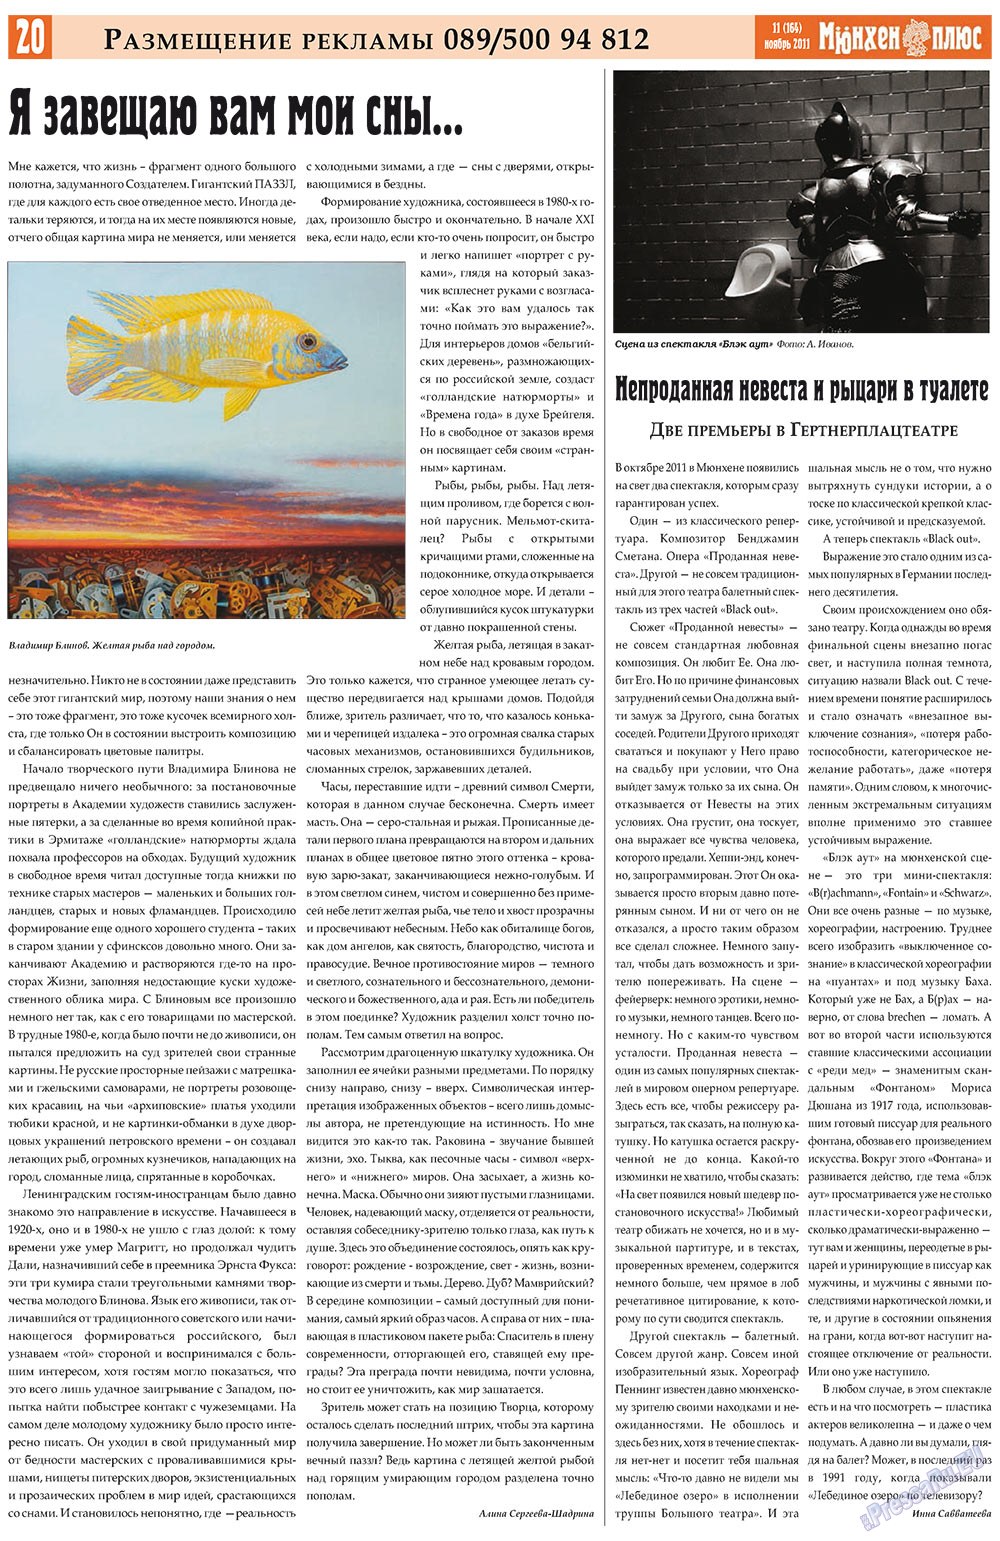 Германия плюс, газета. 2011 №11 стр.20